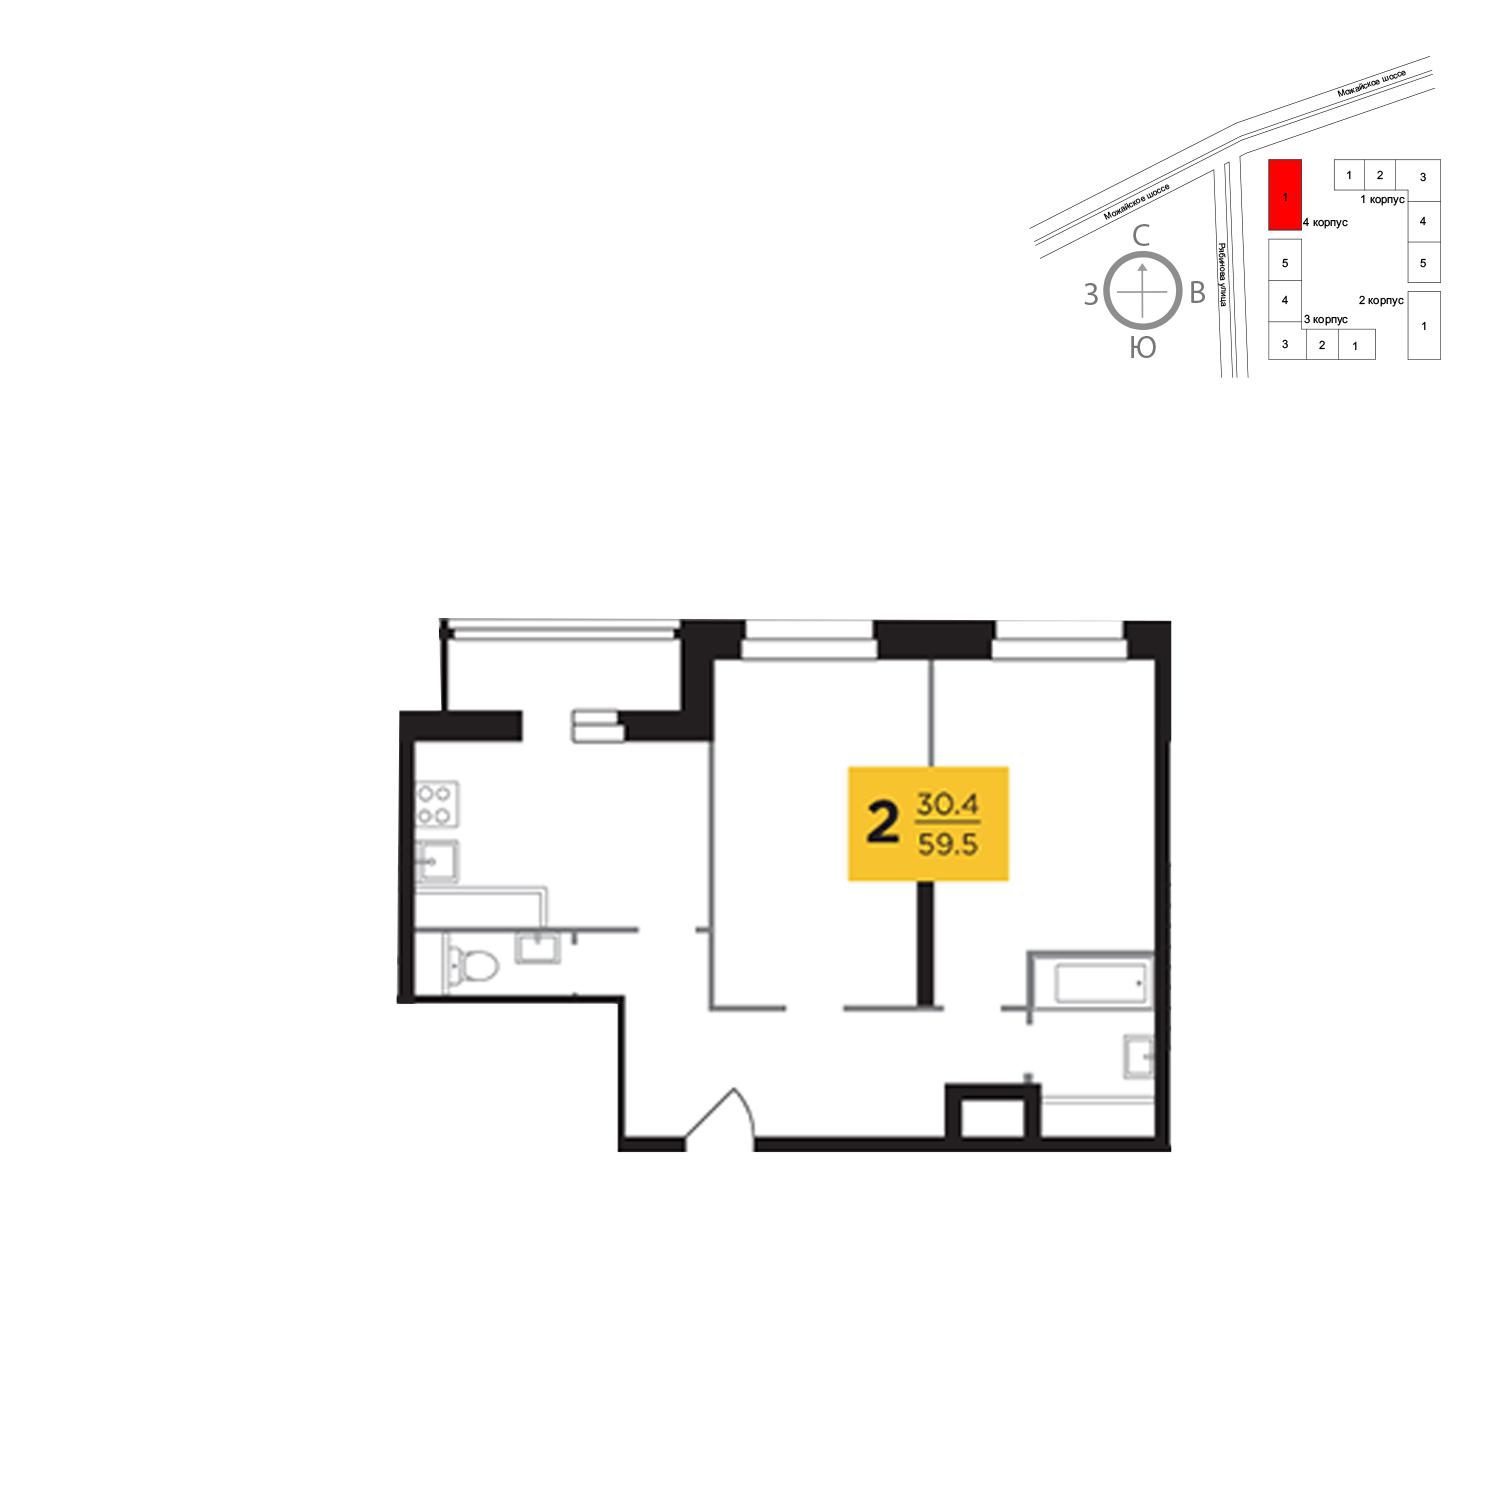 Продаётся 2-комнатная квартира в новостройке 59.5 кв.м. этаж 16/23 за 12 724 178 руб 